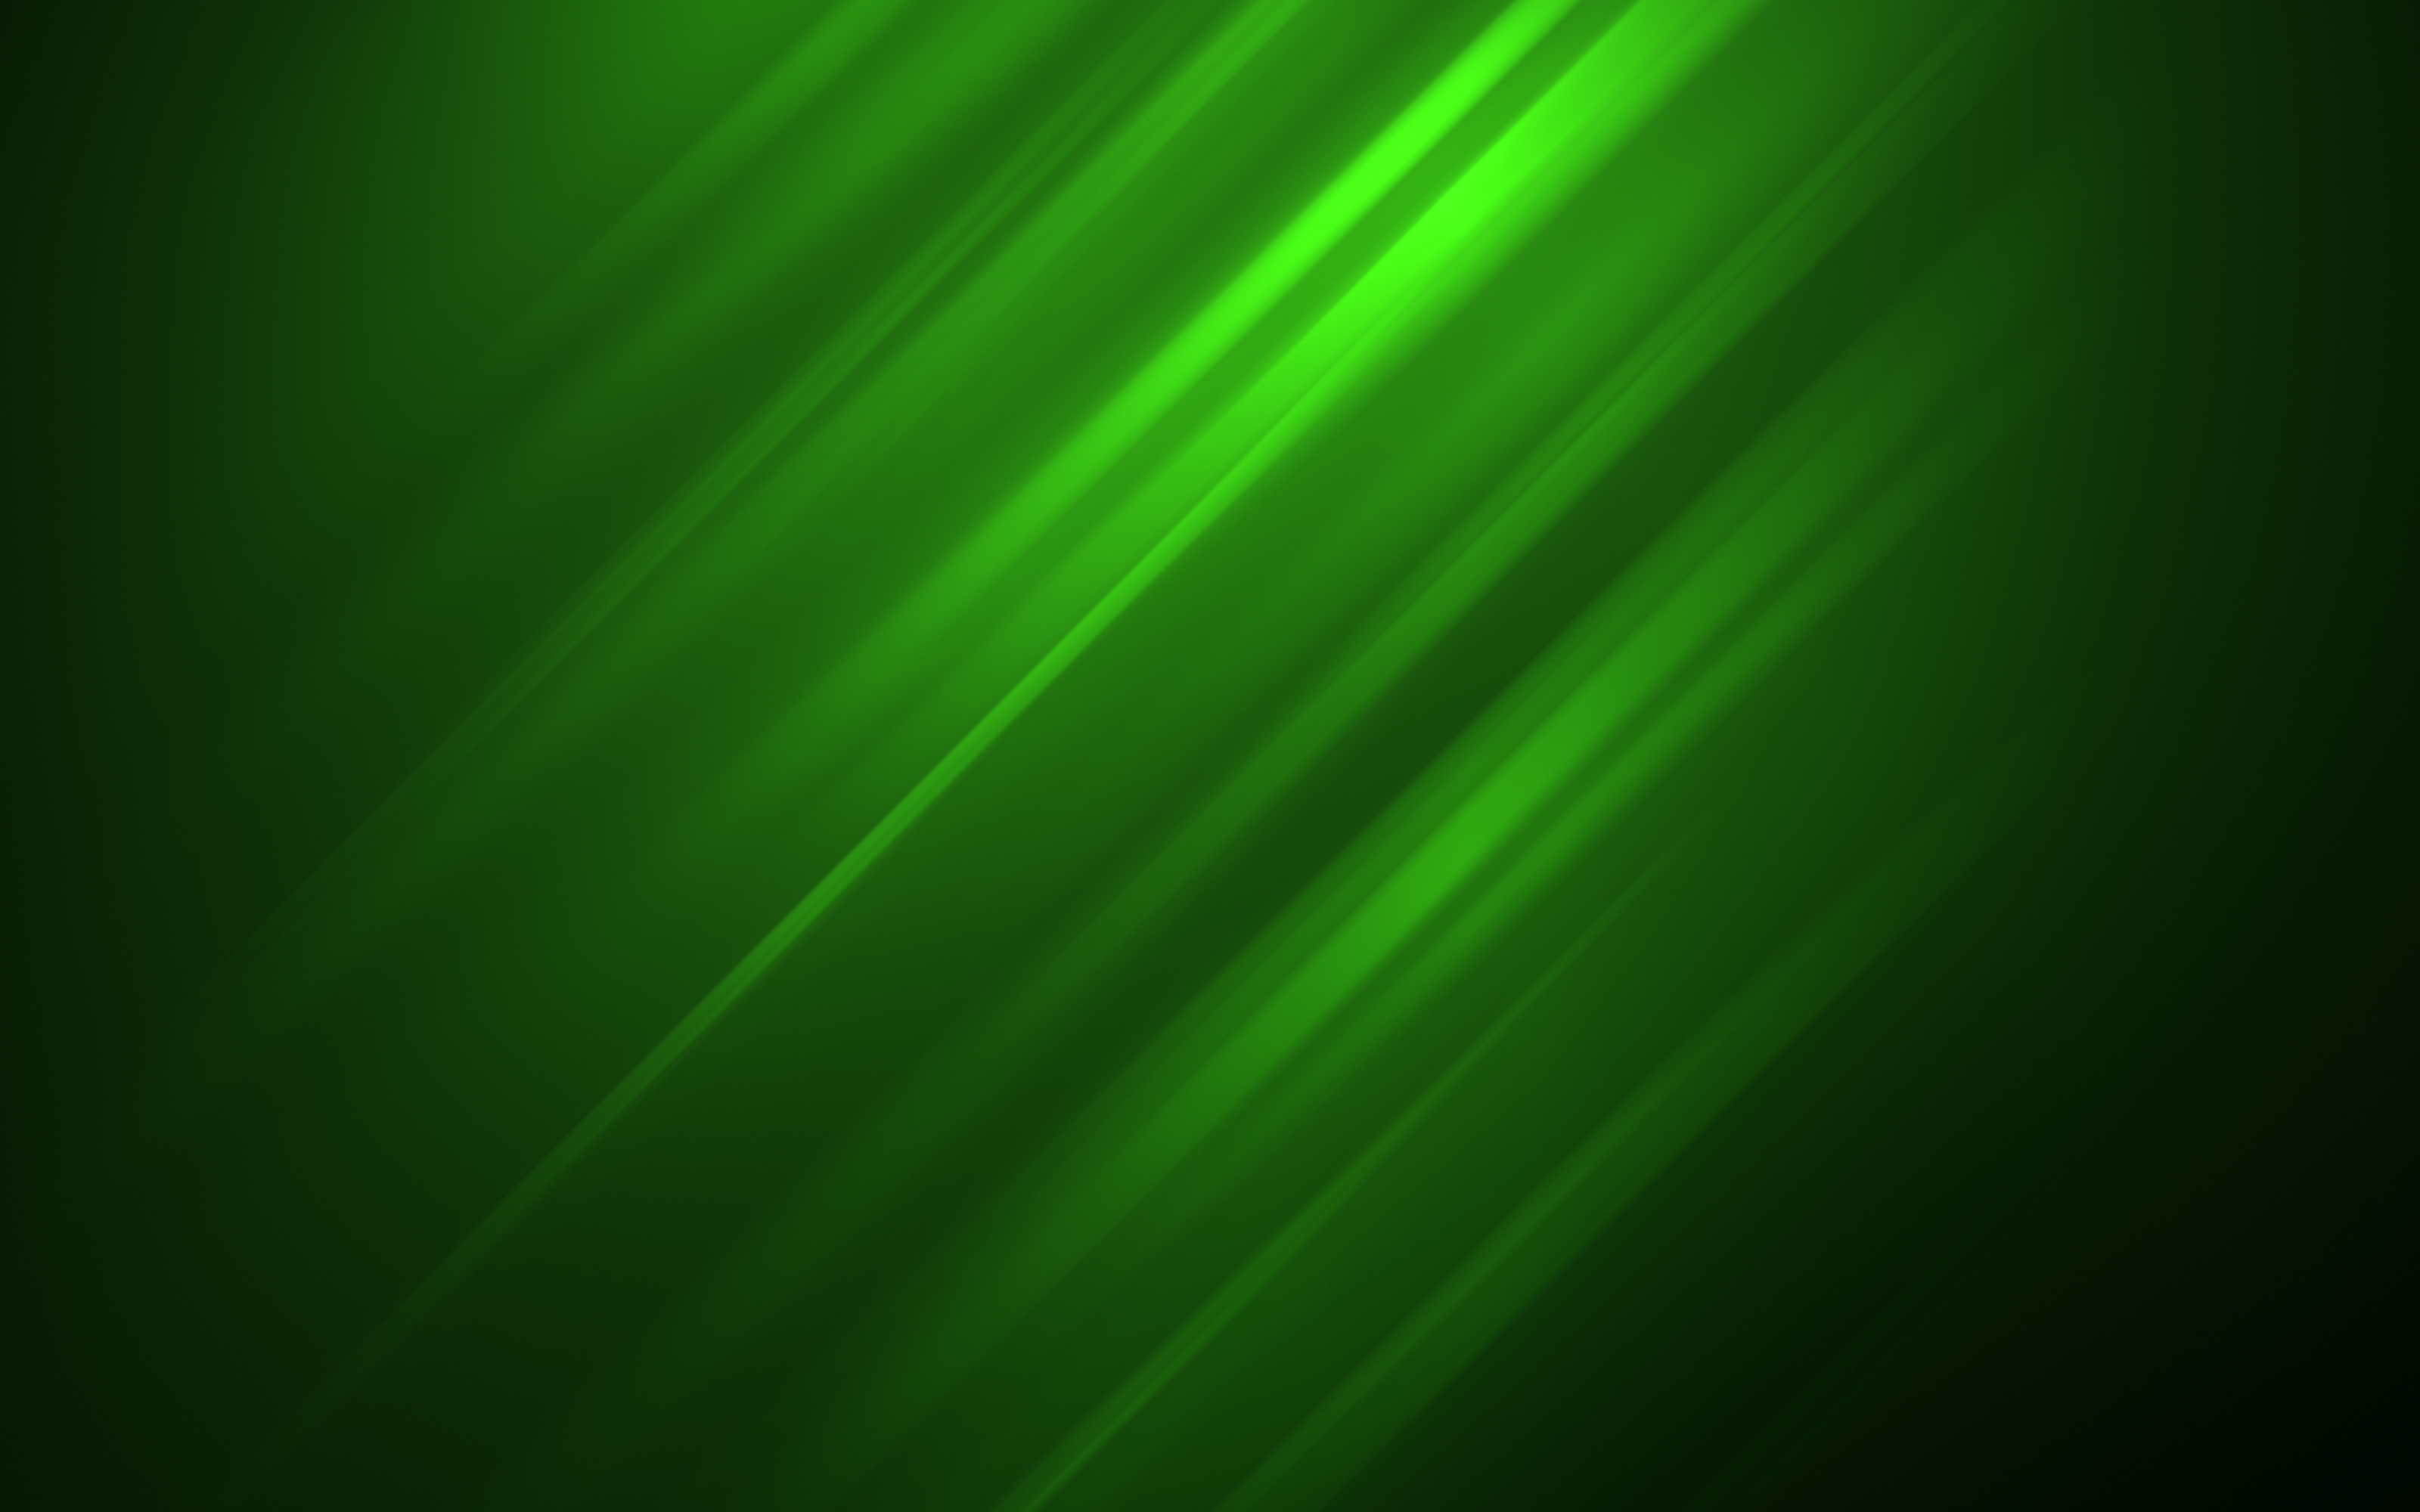 緑の壁紙デザイン,緑,光,葉,技術,ライン